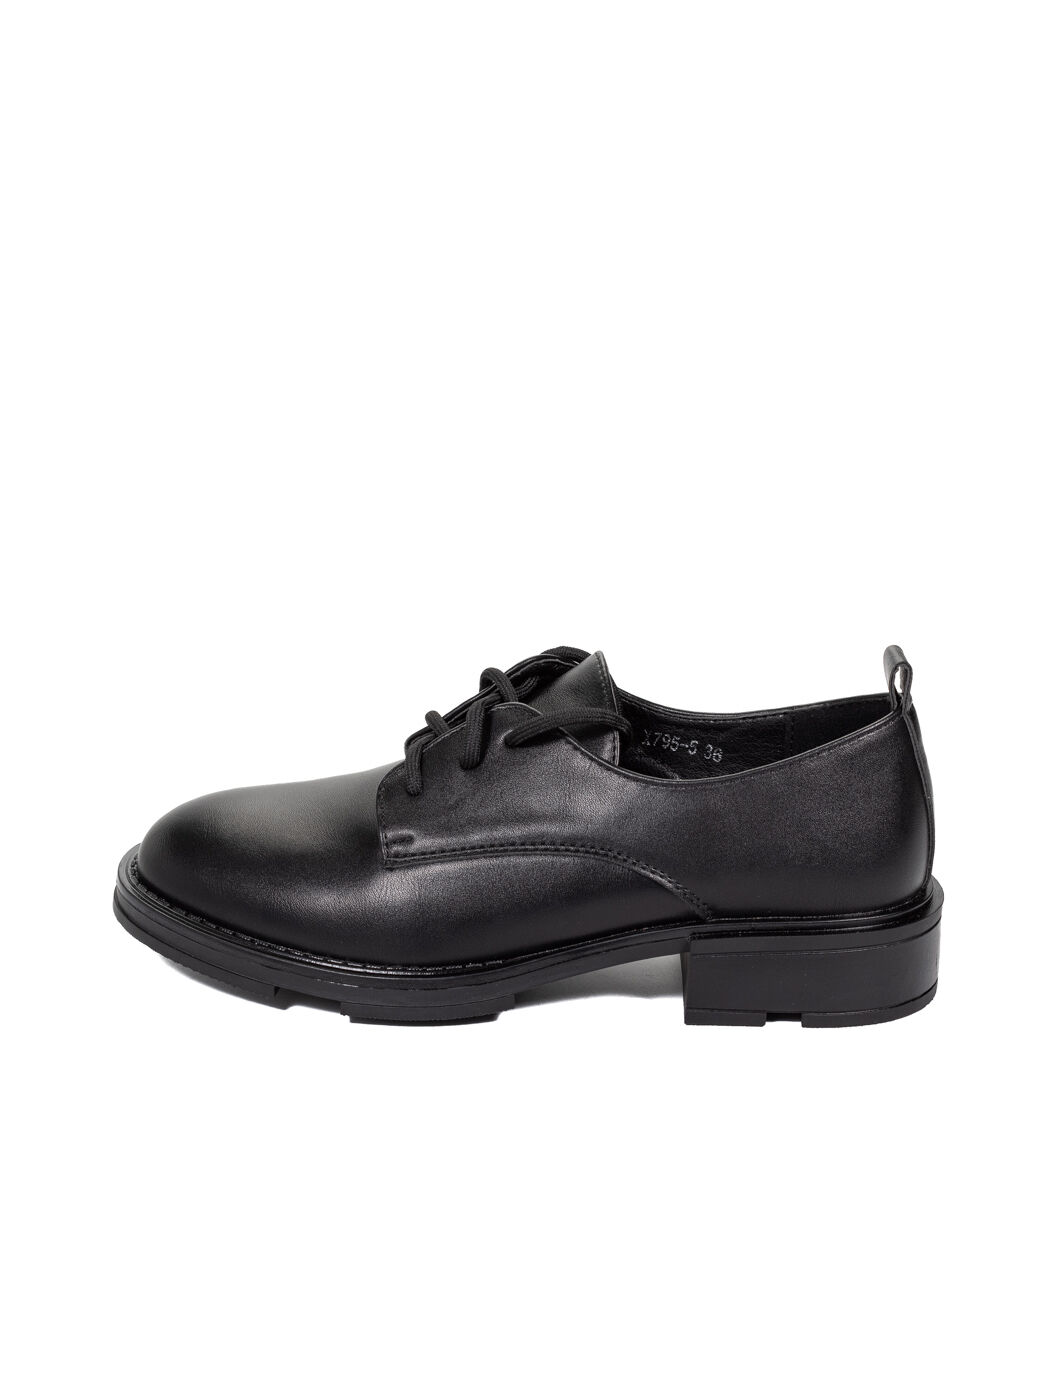 Туфли Oxfords женские черные экокожа каблук устойчивый демисезон 5M